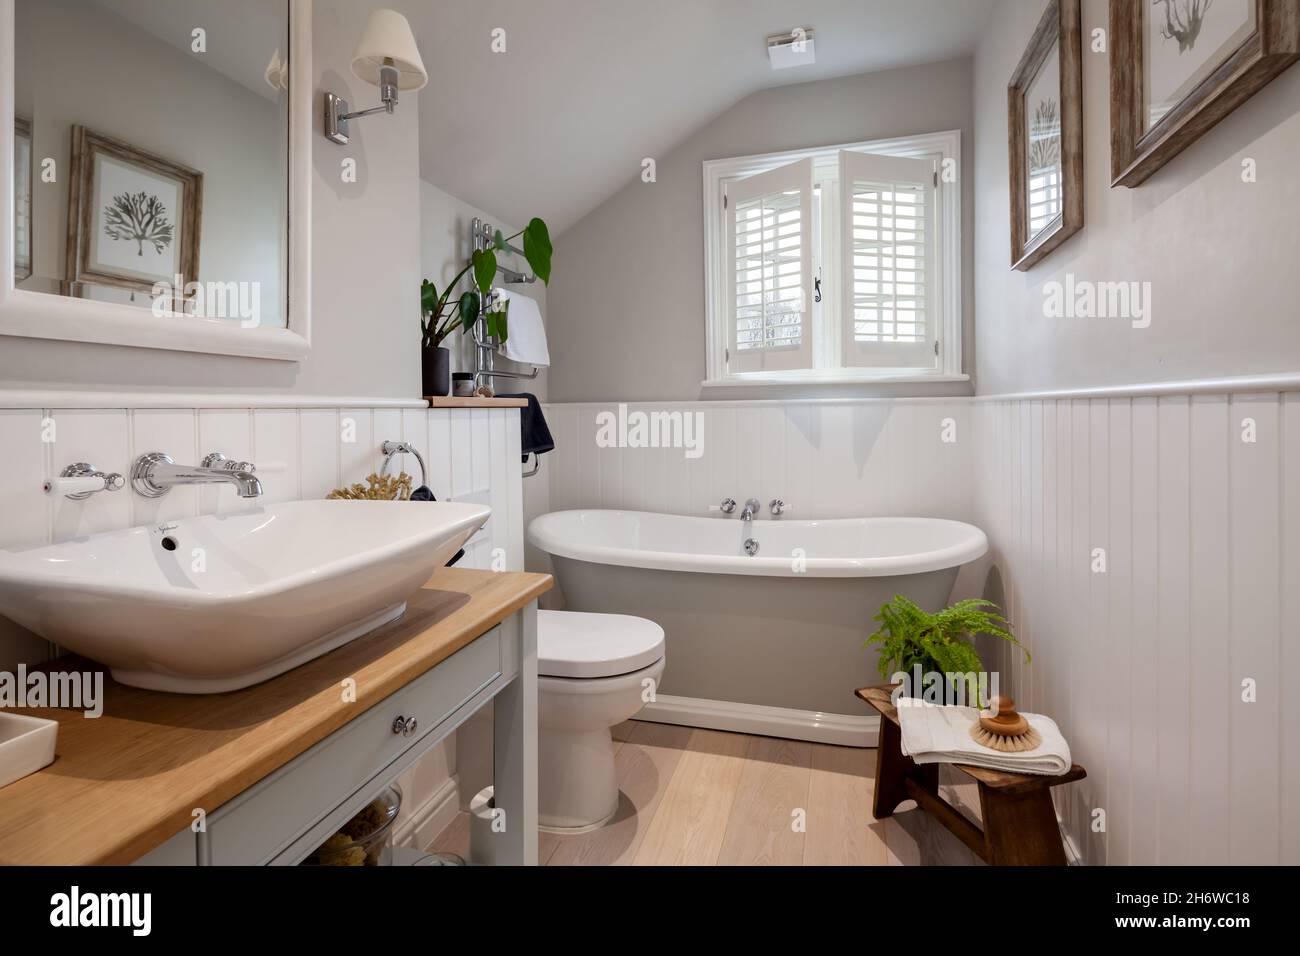 Calford Green, Suffolk, England - Januar 17 2020: Kleines, kompaktes Cottage-Badezimmer mit traditionell gestylter, moderner Einrichtung und Ausstattung Stockfoto